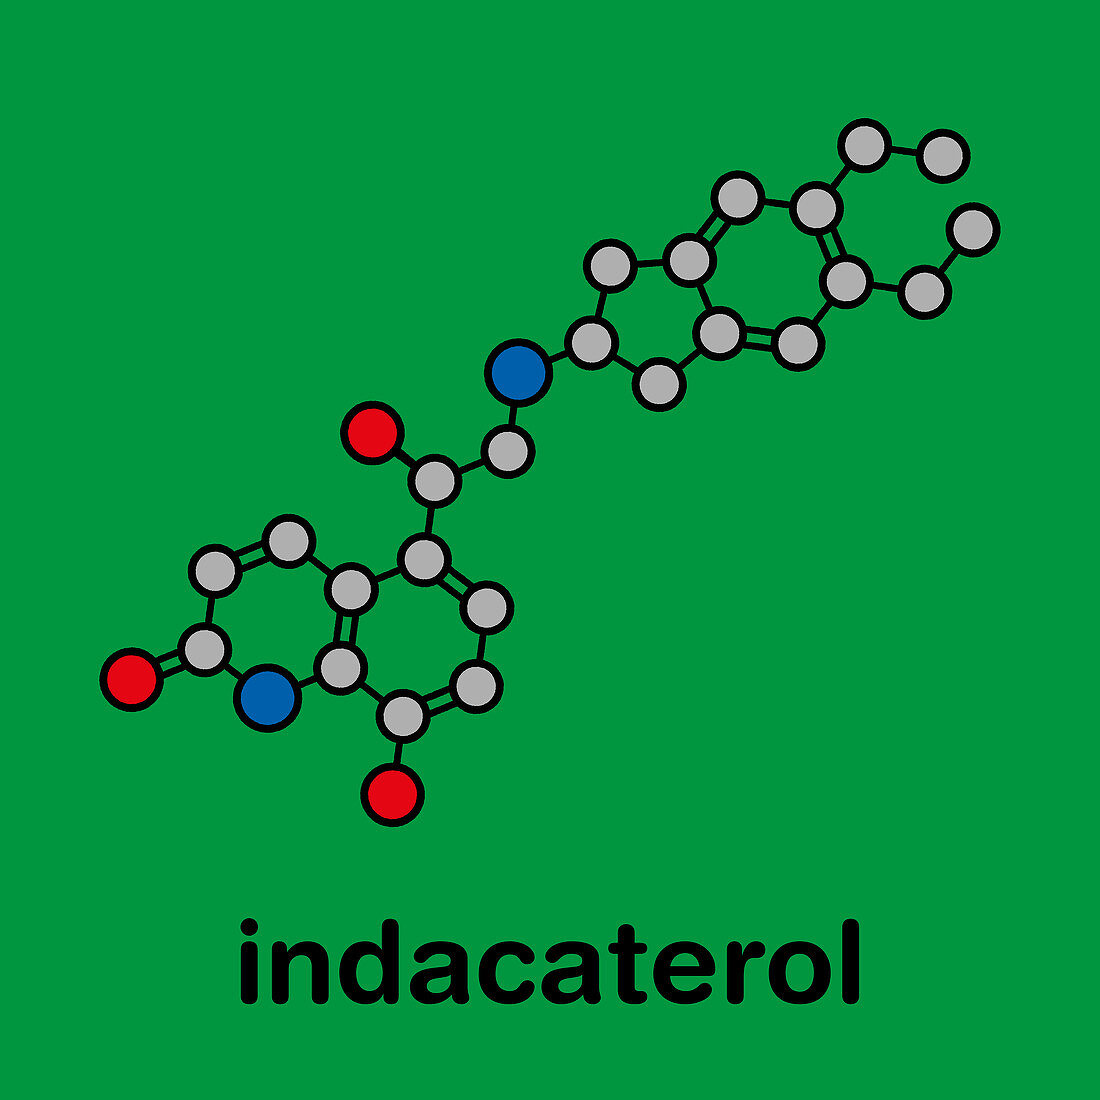 Indacaterol COPD drug molecule, illustration